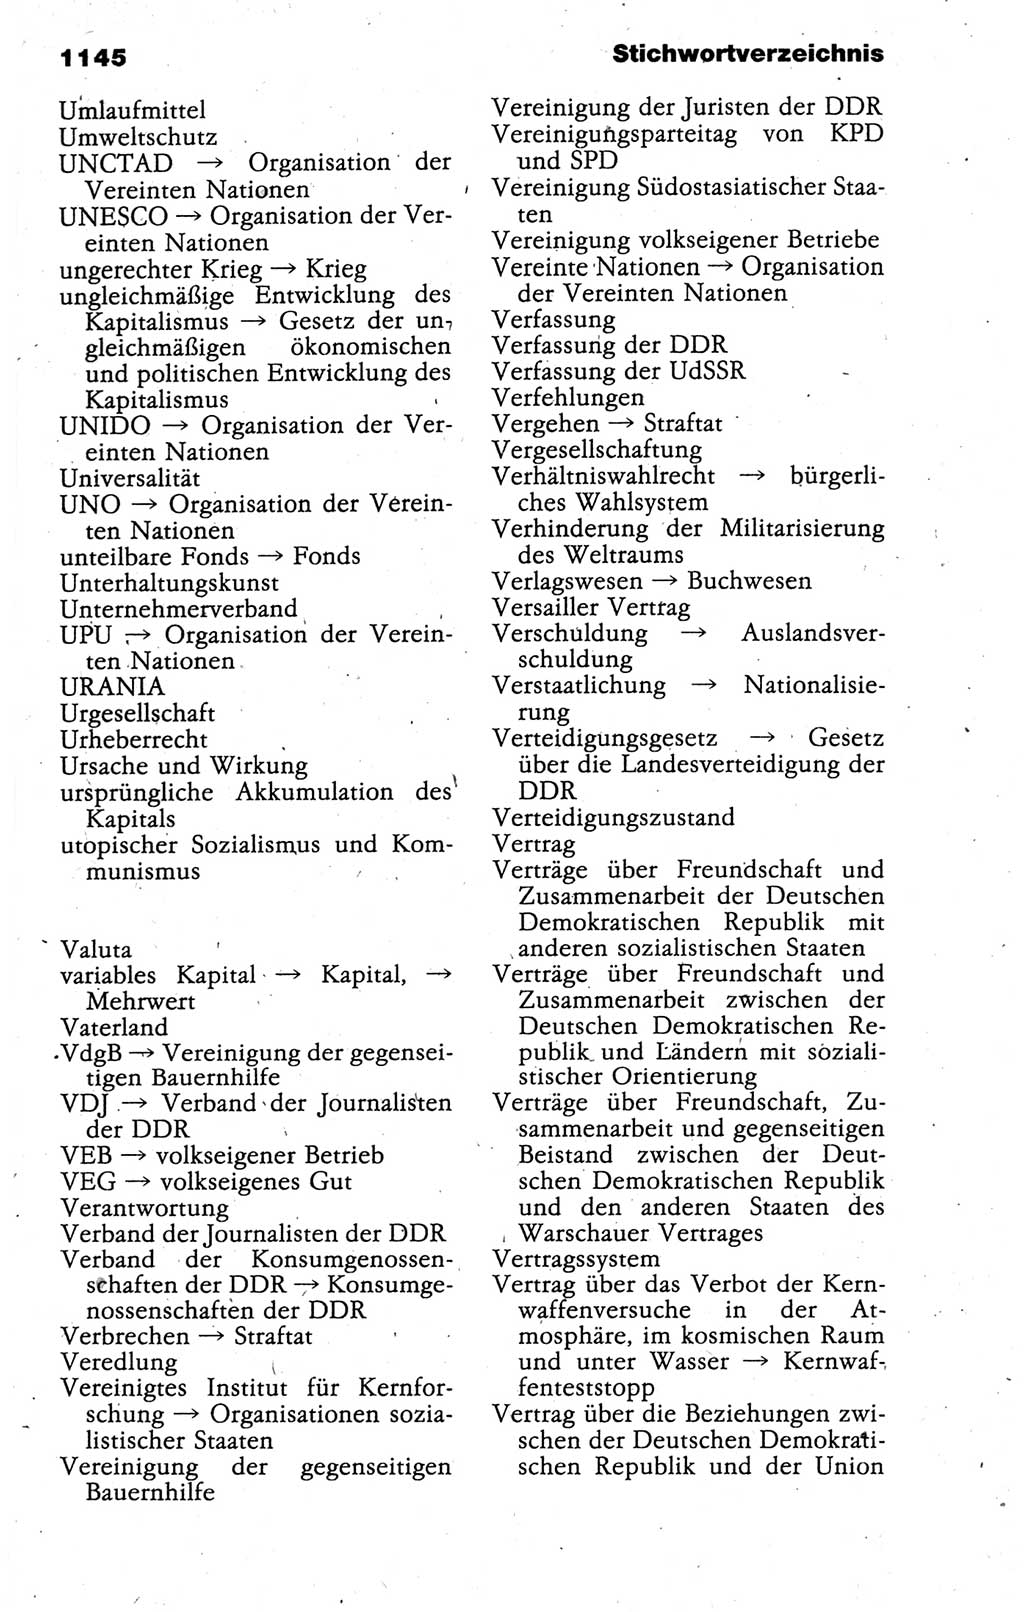 Kleines politisches Wörterbuch [Deutsche Demokratische Republik (DDR)] 1988, Seite 1145 (Kl. pol. Wb. DDR 1988, S. 1145)